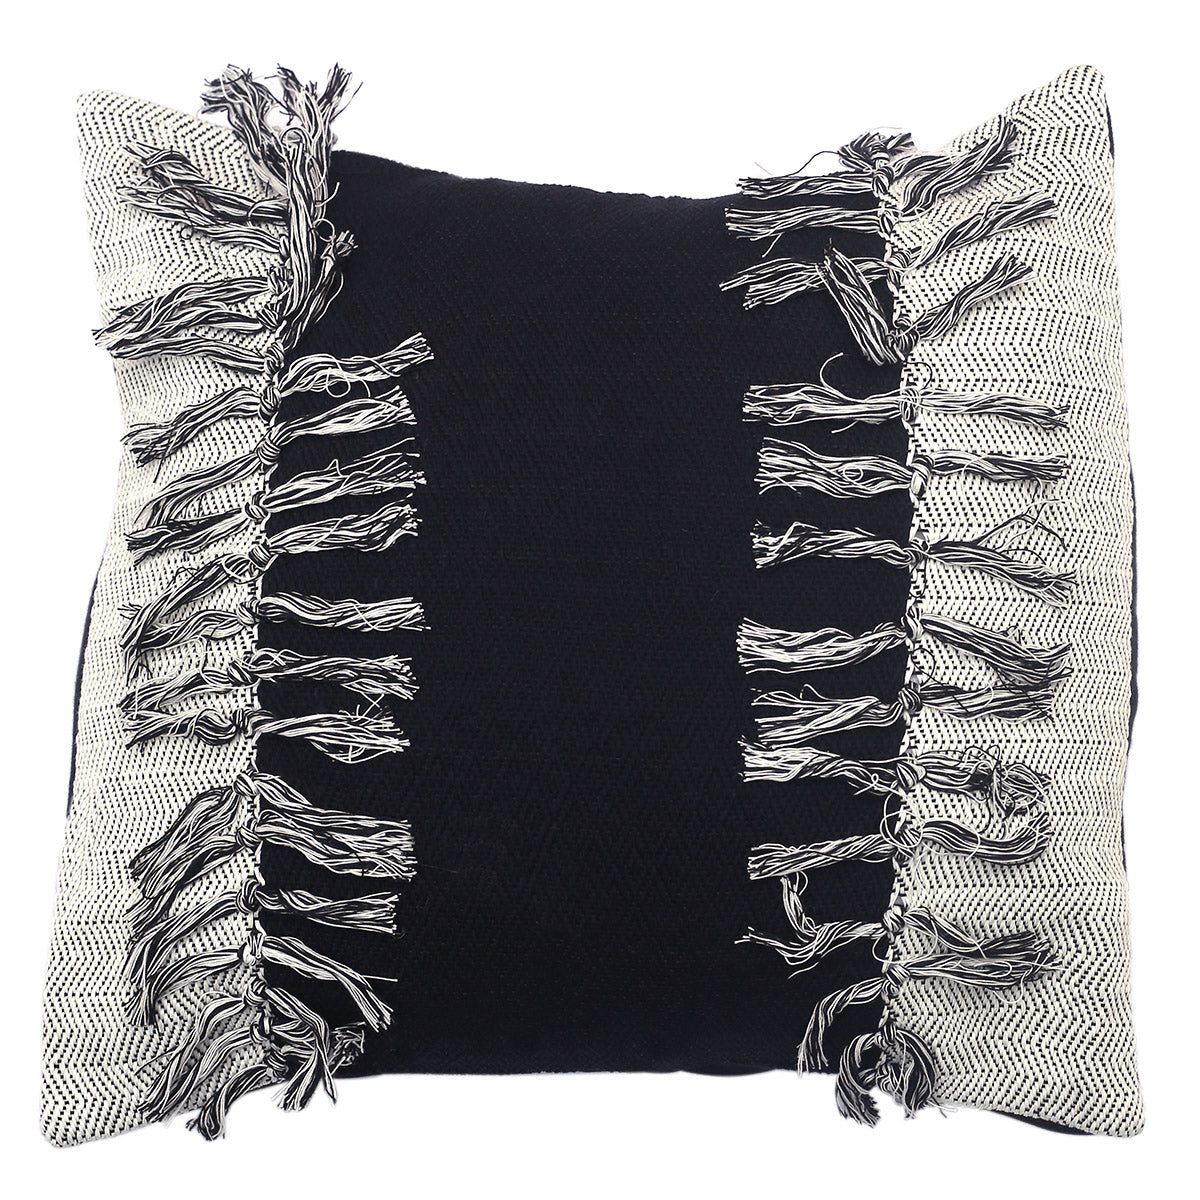 Black Tassles Cushion Cover 16x16"